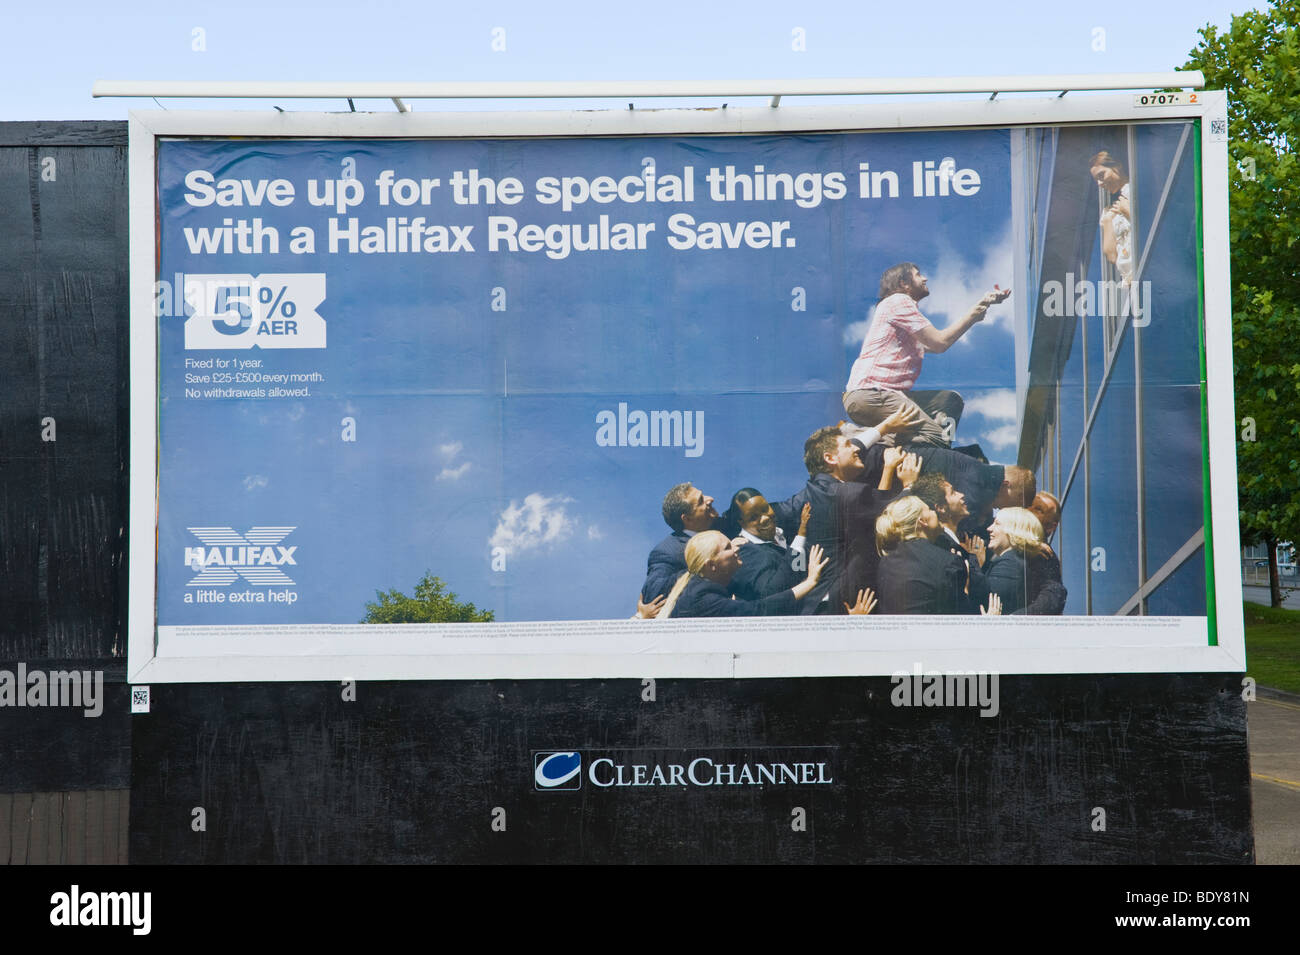 ClearChannel am Straßenrand Reklametafel für Halifax regelmäßige Saver in UK Stockfoto